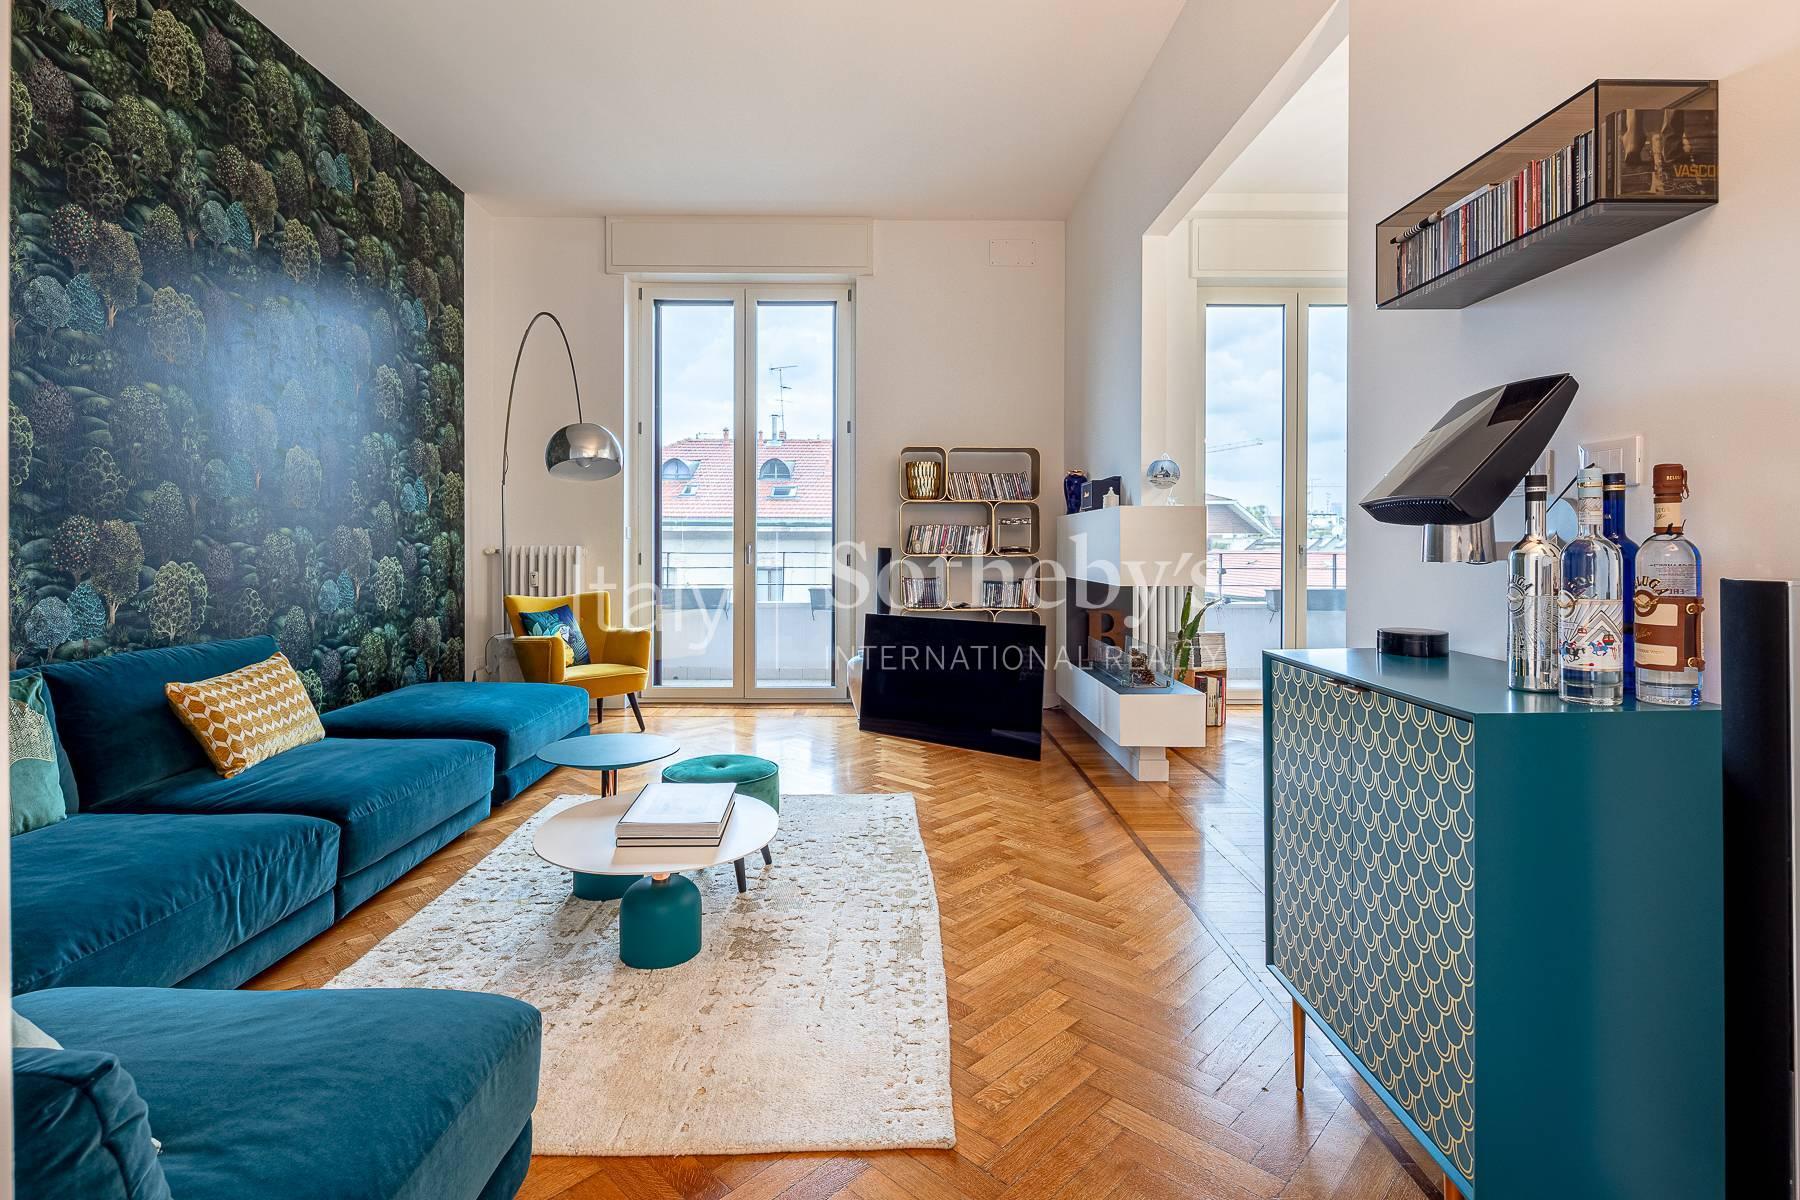 Hervorragend möblierte Wohnung im Bianca di Savoia / Quadronno Stadtviertel - 2